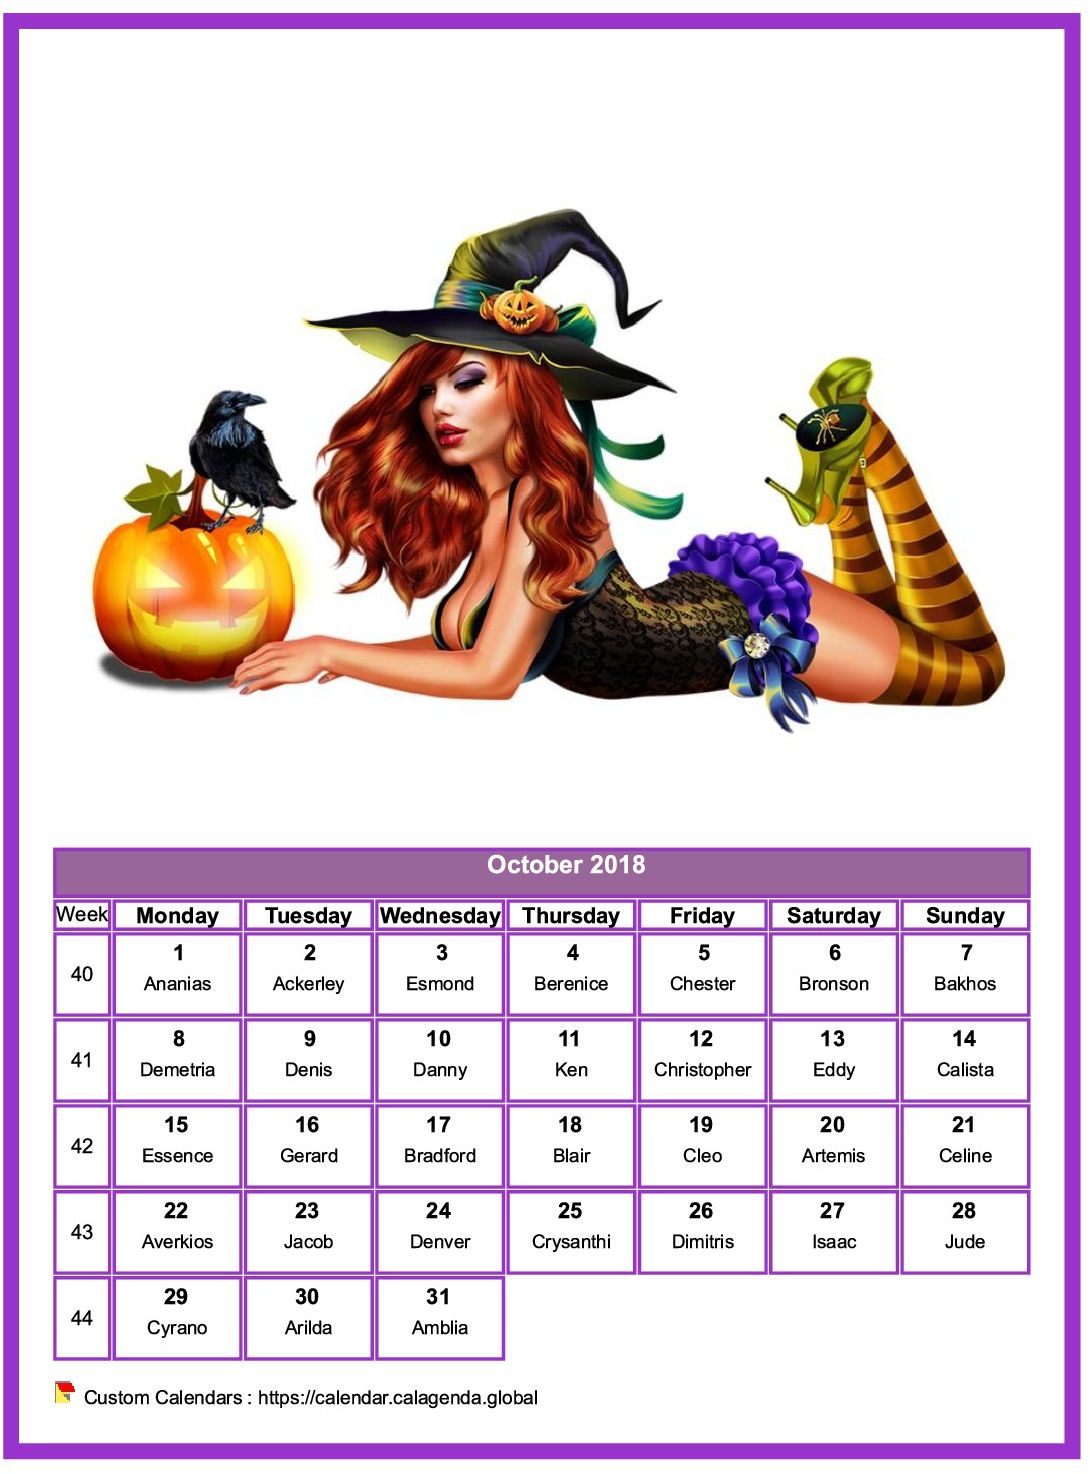 Calendar October 2018 women